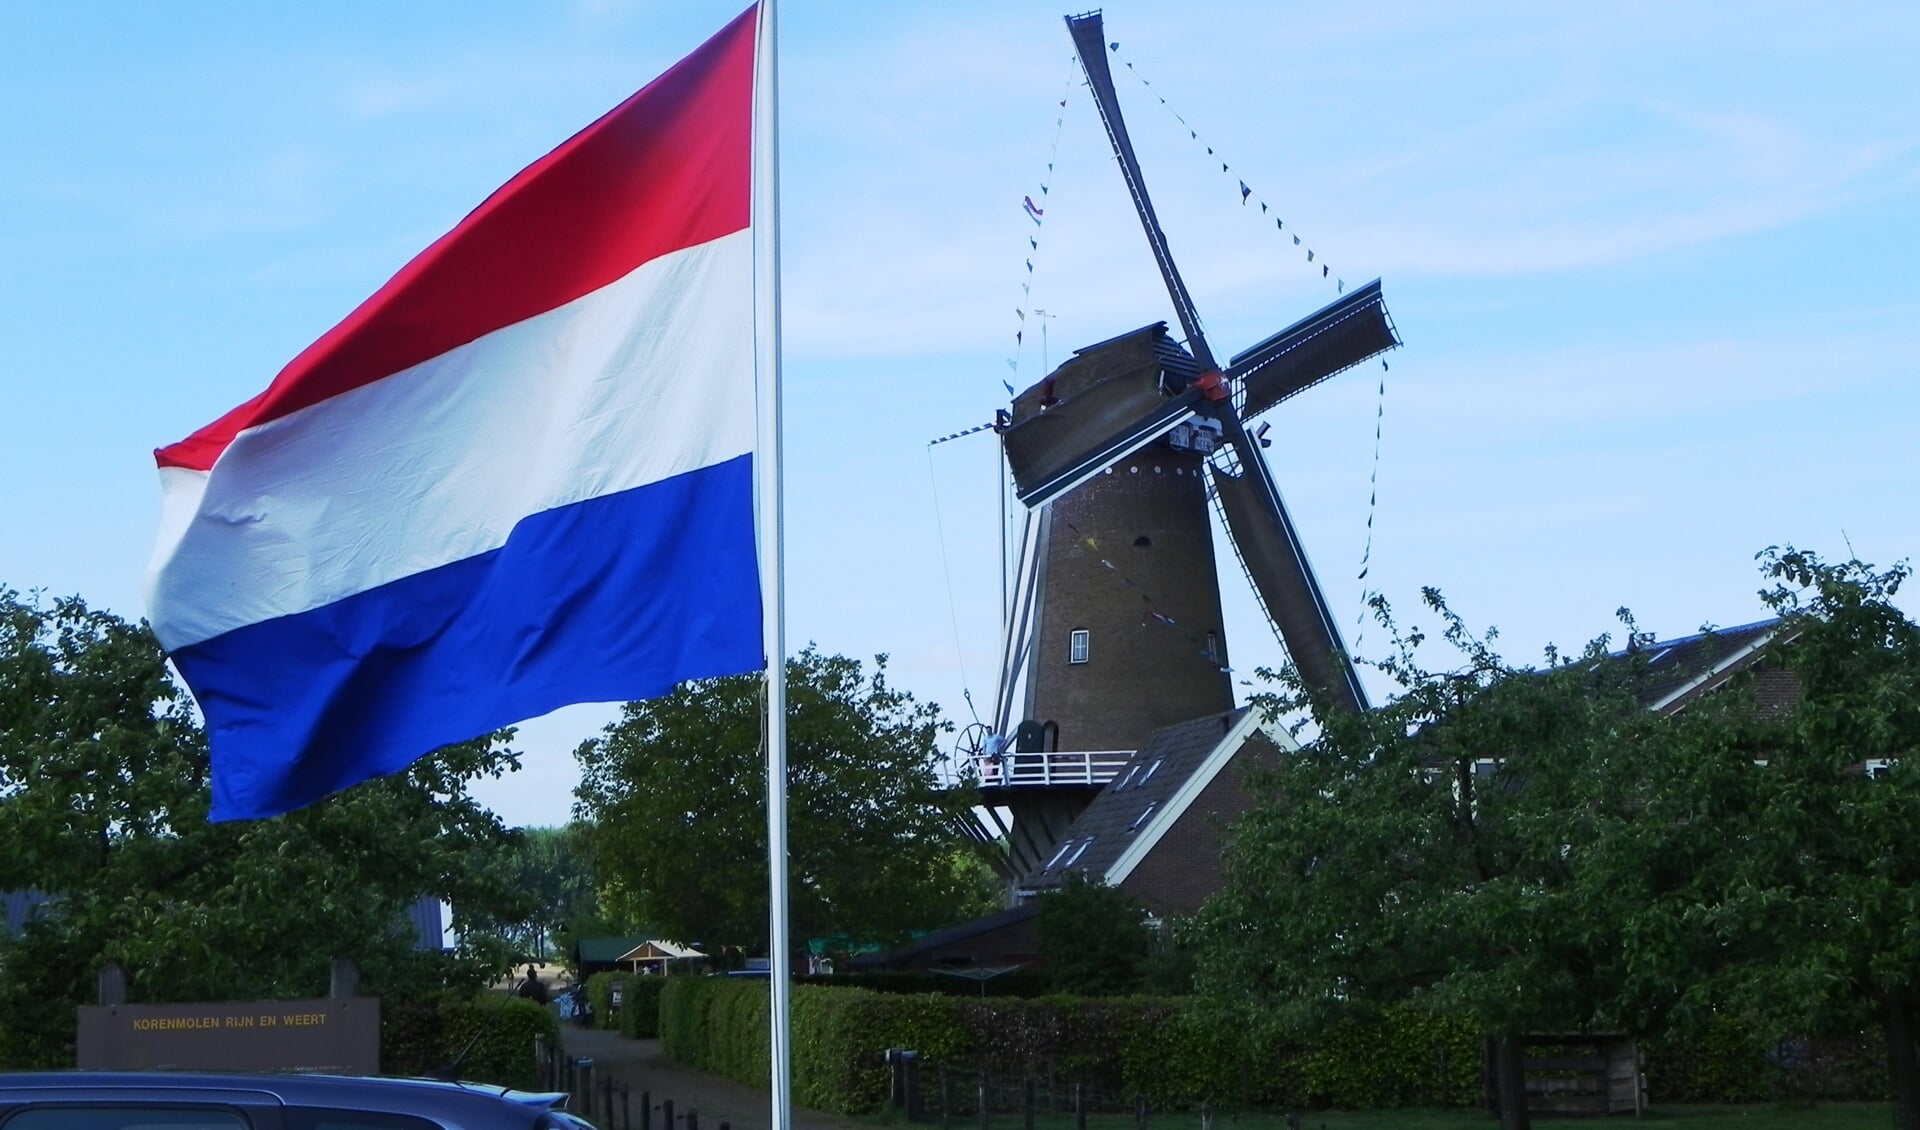 In 1994 werd de molen Rijn en Weert na jaren van restauratie feestelijk heropend. Nu 25 jaar later is zij nog steeds in functie en staat zij dankzij de inzet van vele vrijwilligers nog fier te draaien.